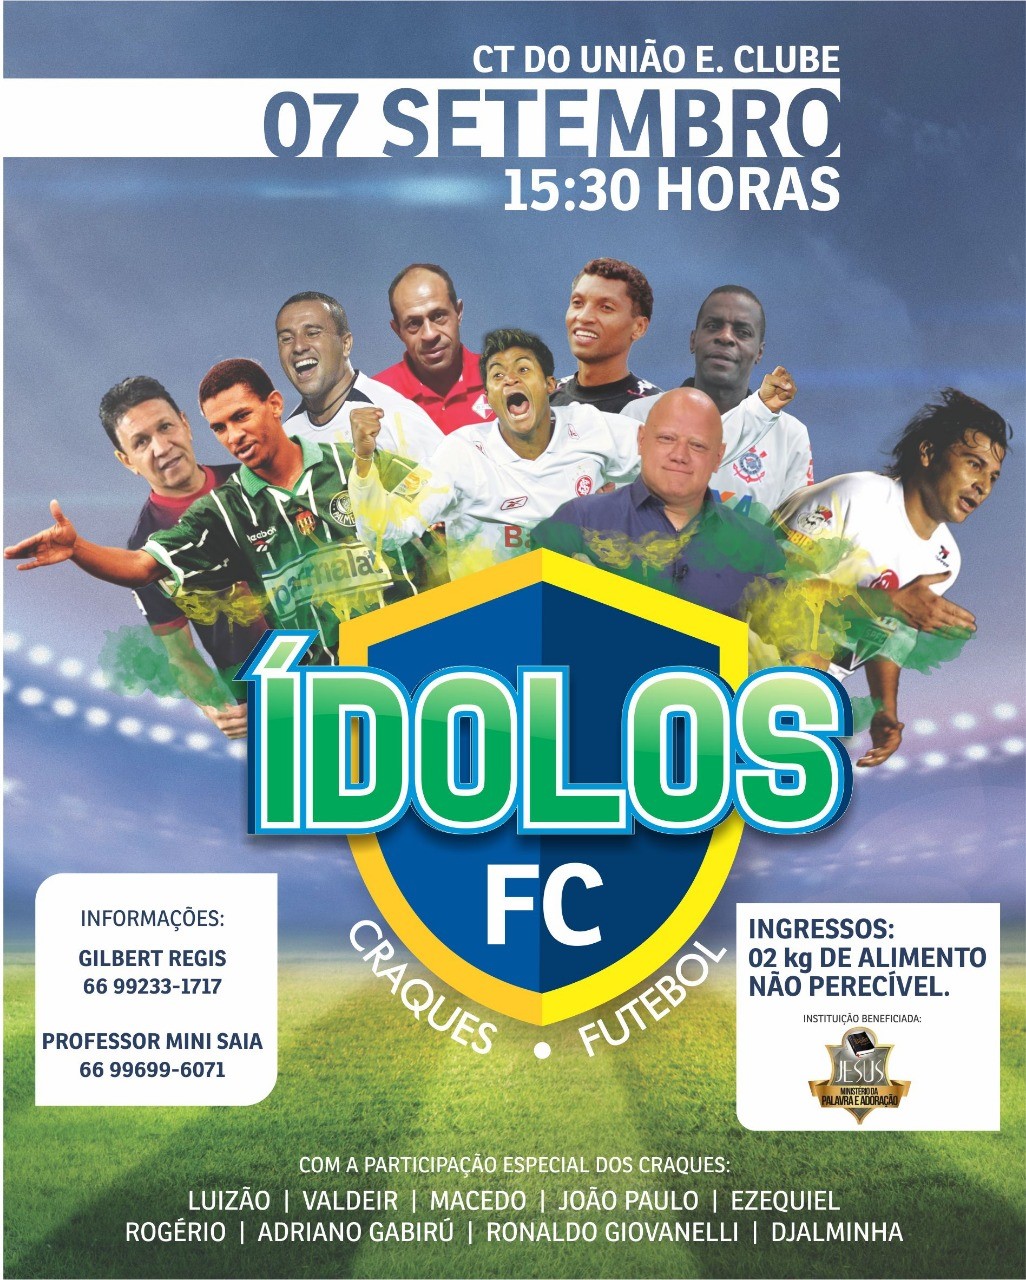 Jogo entre Ídolos do futebol acontece dia 07 em Rondonópolis